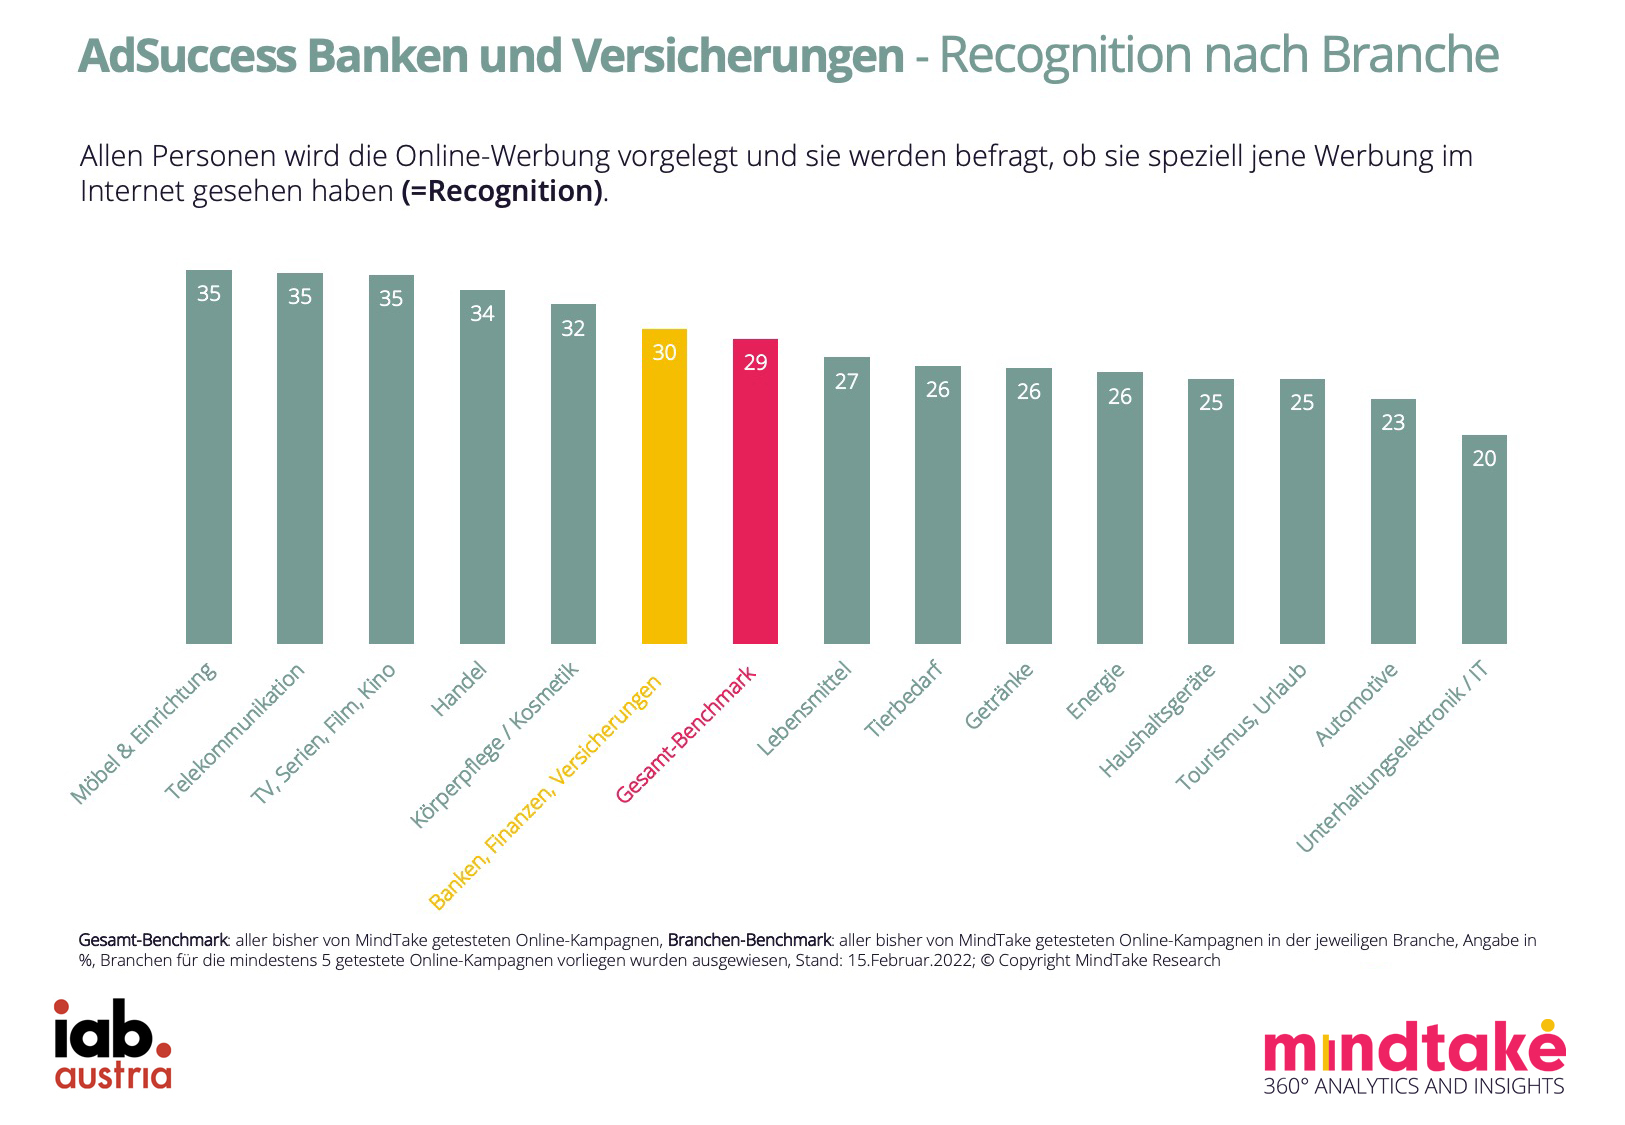 Recognition_Banken_Versicherungen